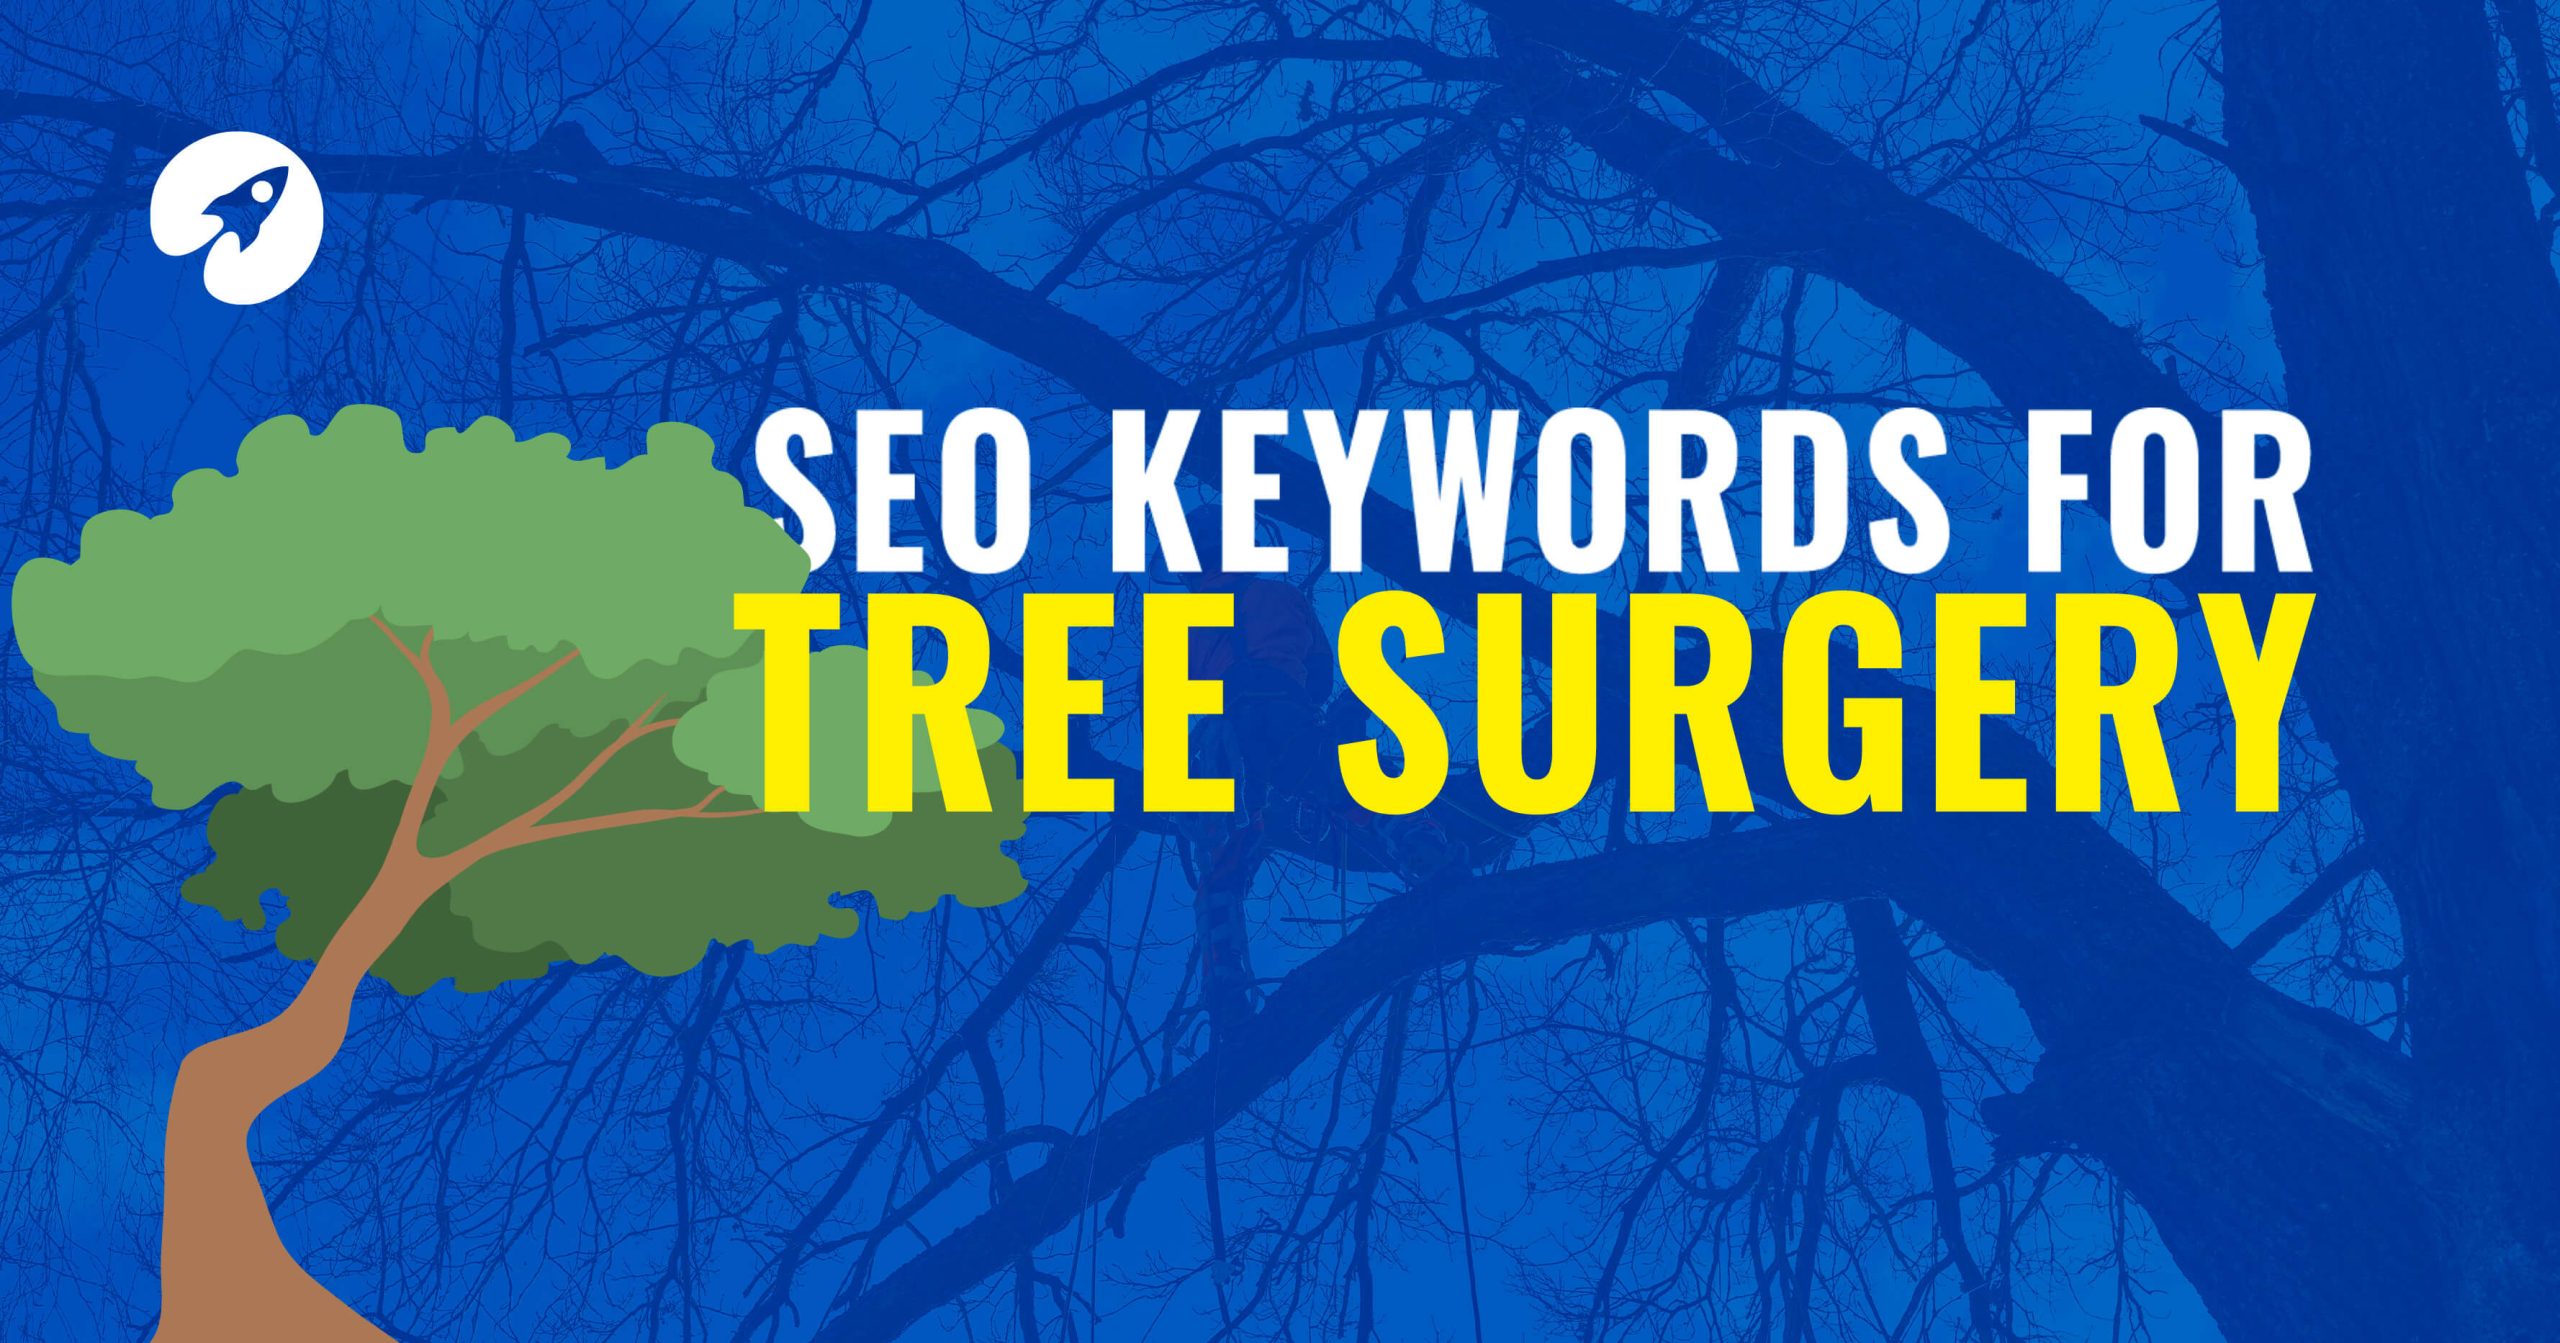 SEO keywords for tree surgery